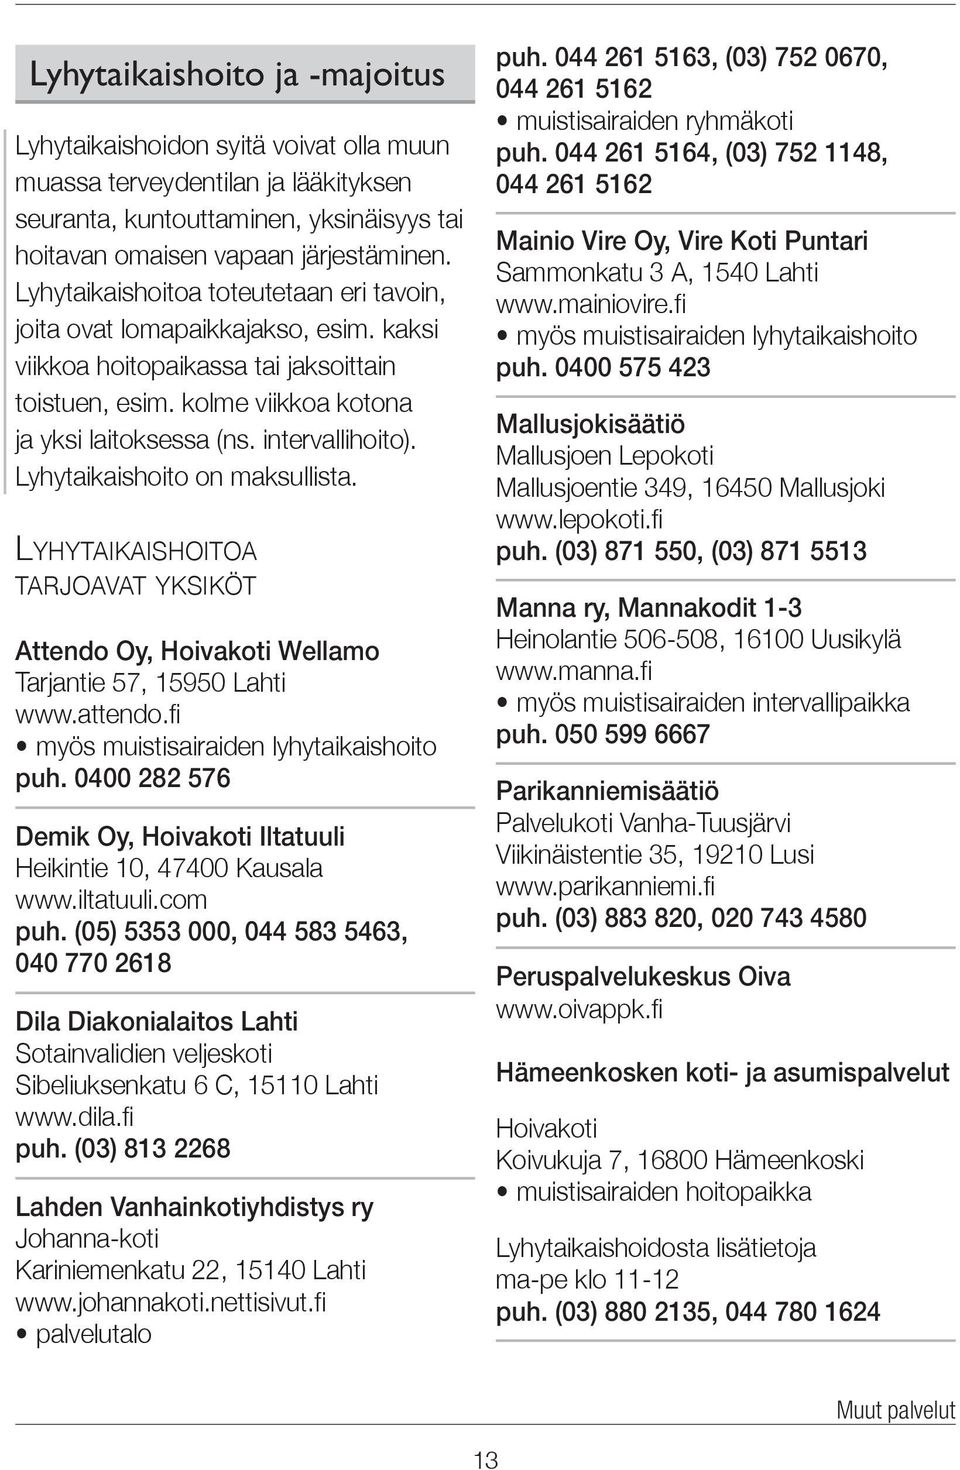 Lyhytaikaishoito on maksullista. Lyhytaikaishoitoa tarjoavat yksiköt Attendo Oy, Hoivakoti Wellamo Tarjantie 57, 15950 Lahti www.attendo.fi myös muistisairaiden lyhytaikaishoito puh.